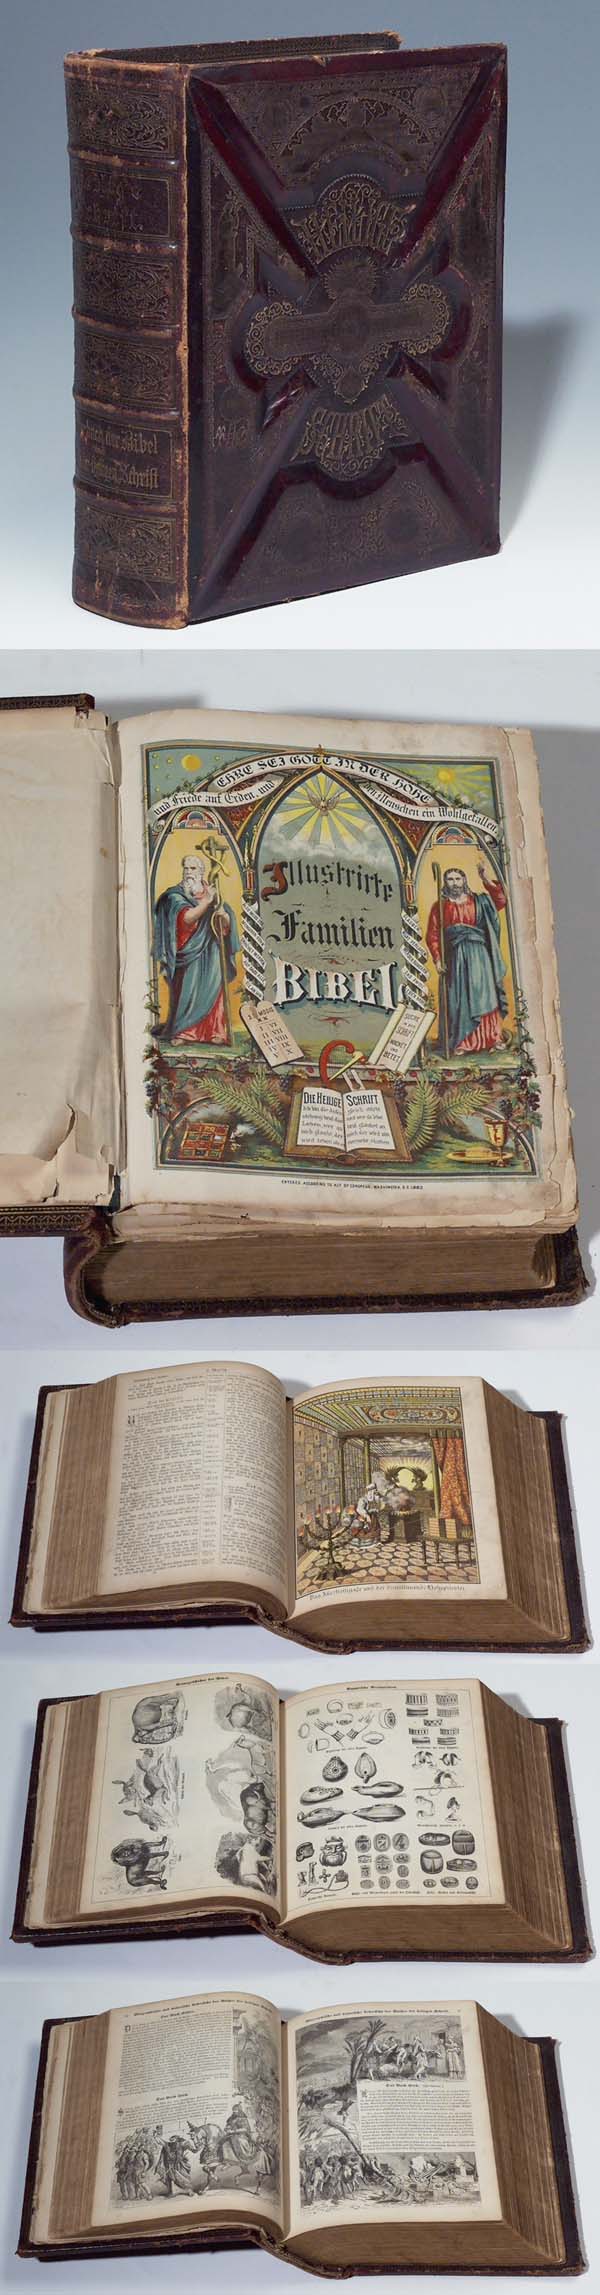 Illustrierte Familien-Bibel 1883.